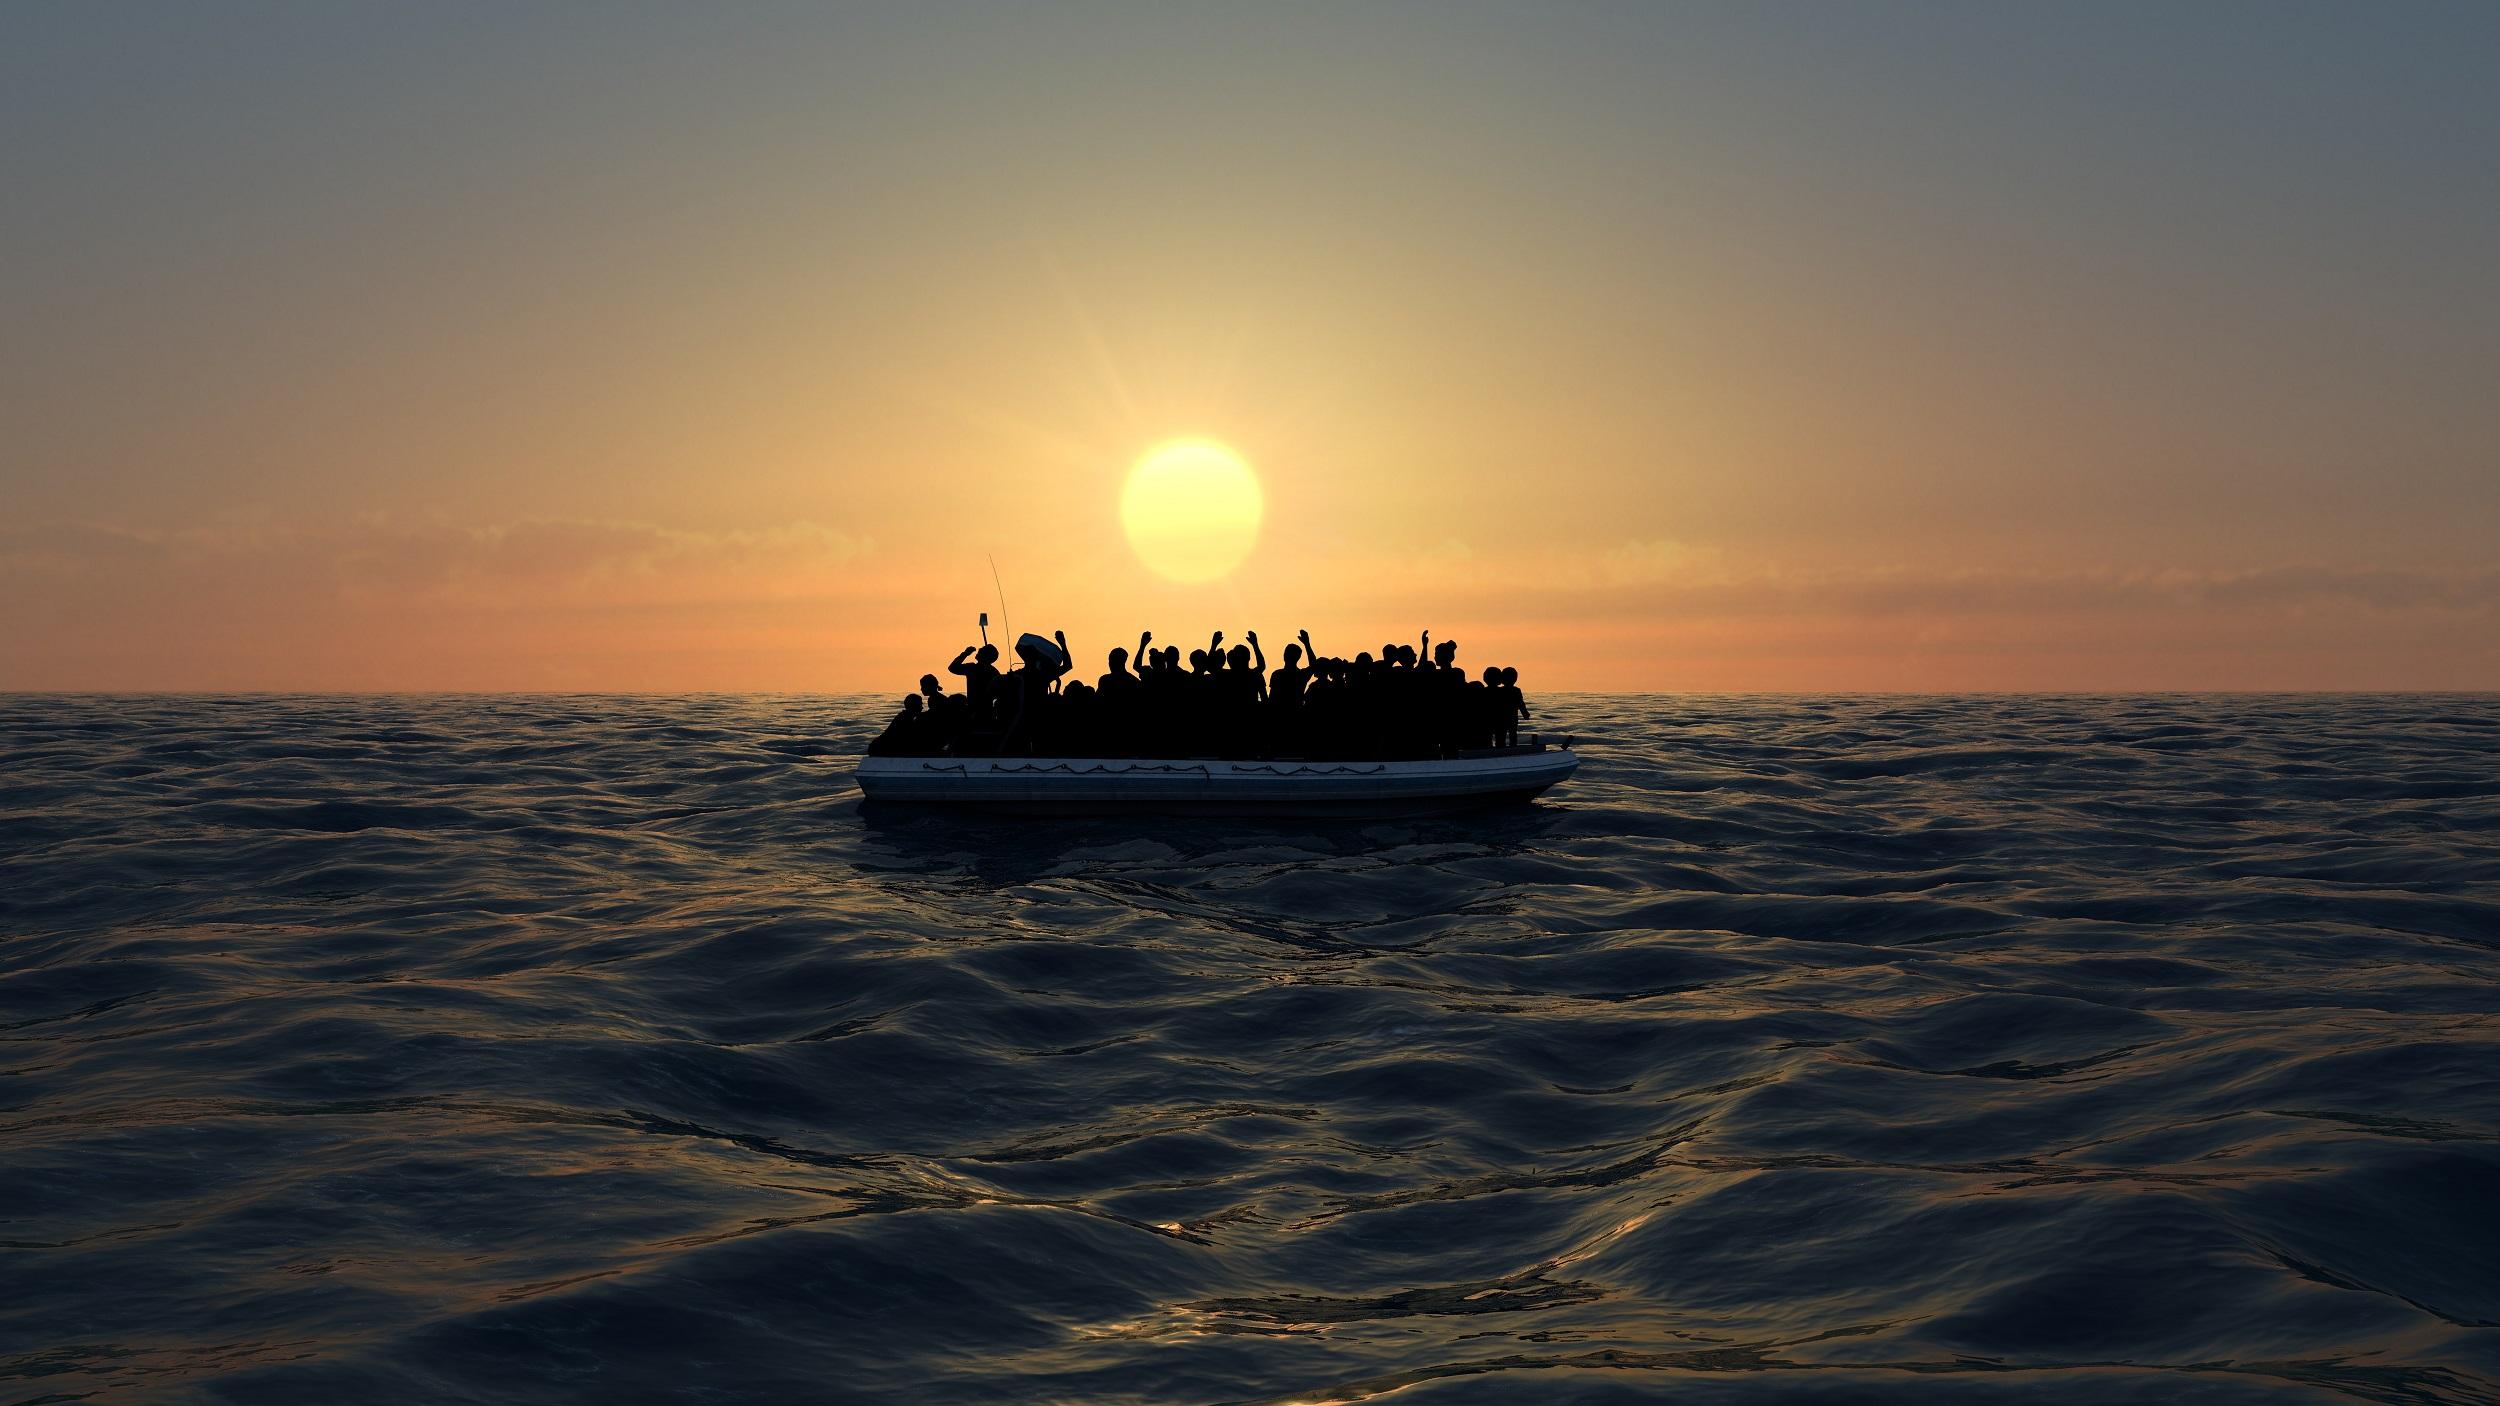 Ihmisiä kumiveneessä keskellä merta, taustalla aurinko.